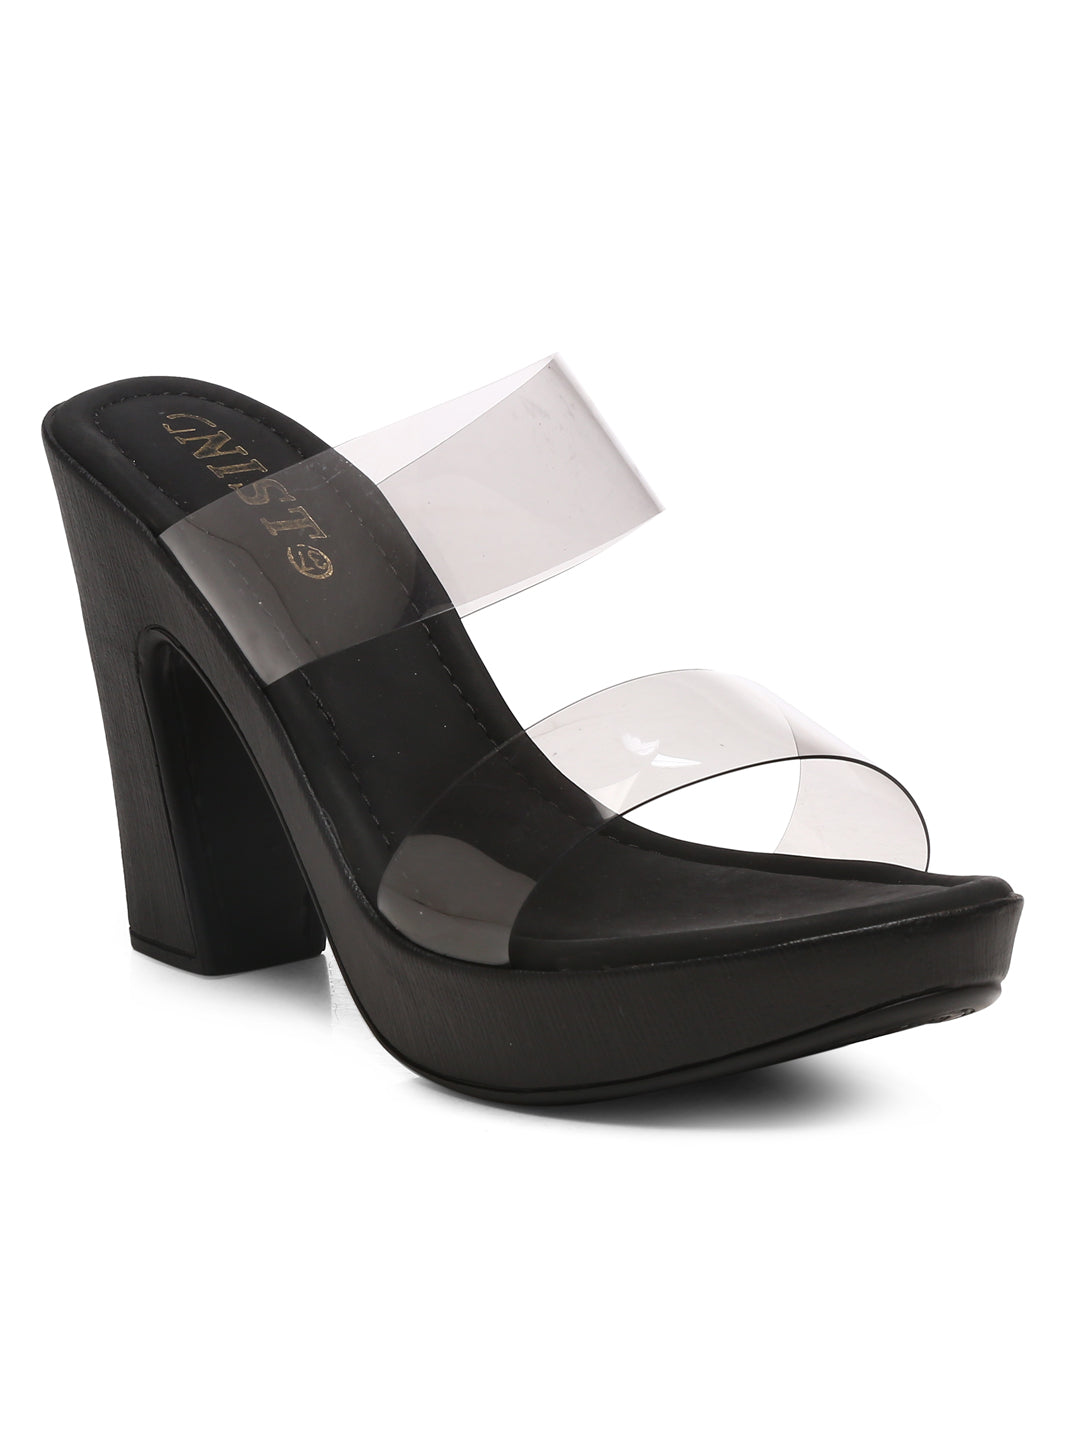 Gnist Black High Heels Transparent Platforms Heels